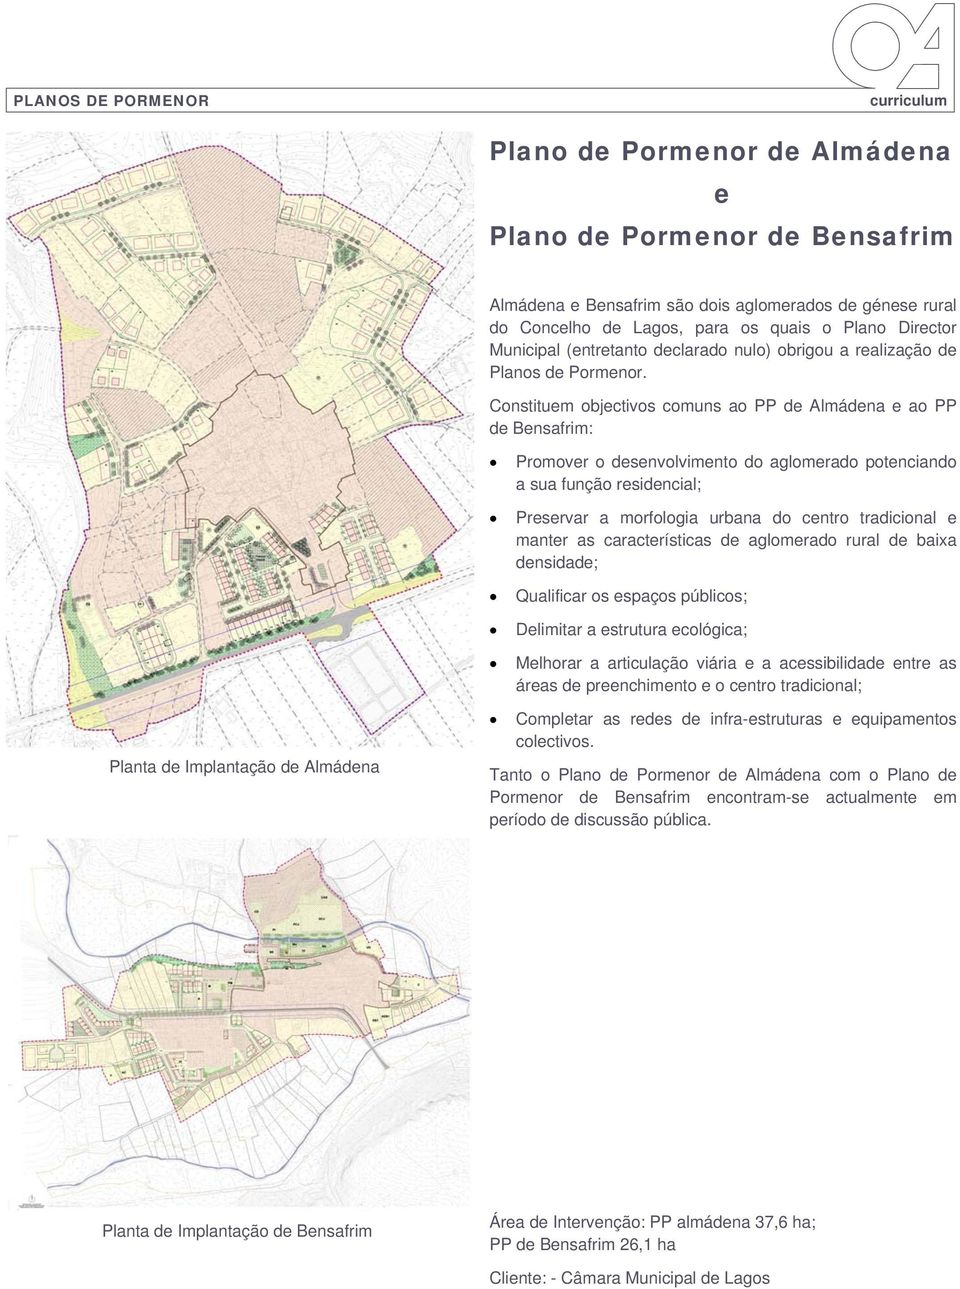 Constituem objectivos comuns ao PP de Almádena e ao PP de Bensafrim: Promover o desenvolvimento do aglomerado potenciando a sua função residencial; Preservar a morfologia urbana do centro tradicional